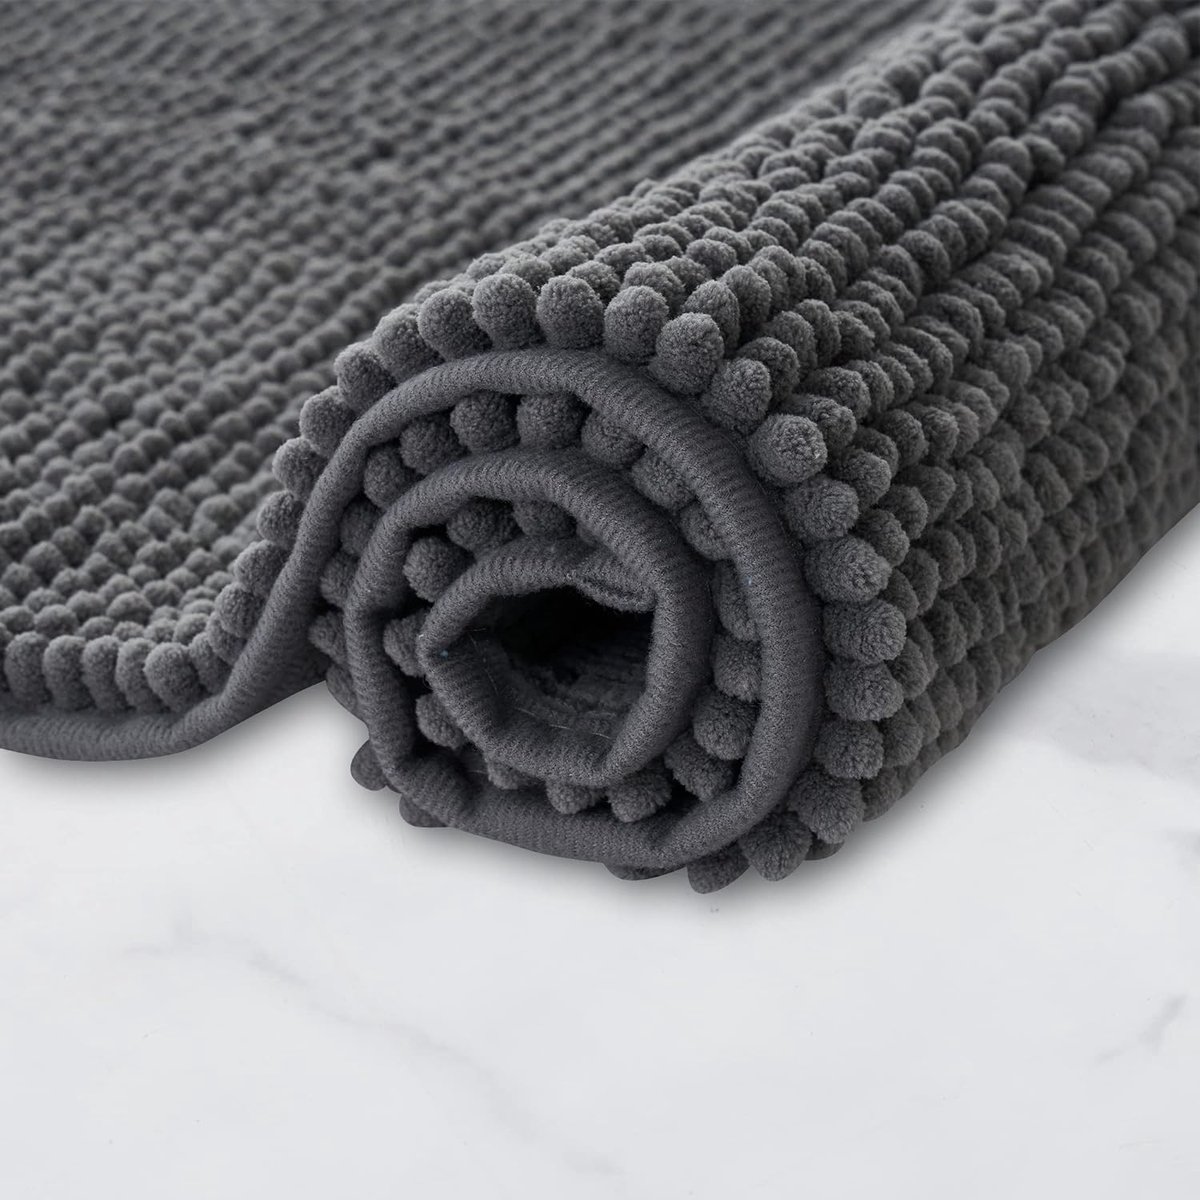 badmat, antislip, super absorberend en machinewasbaar, voor badkamer, douche, bad of als wc-mat, donkergrijs, 40 x 60 cm